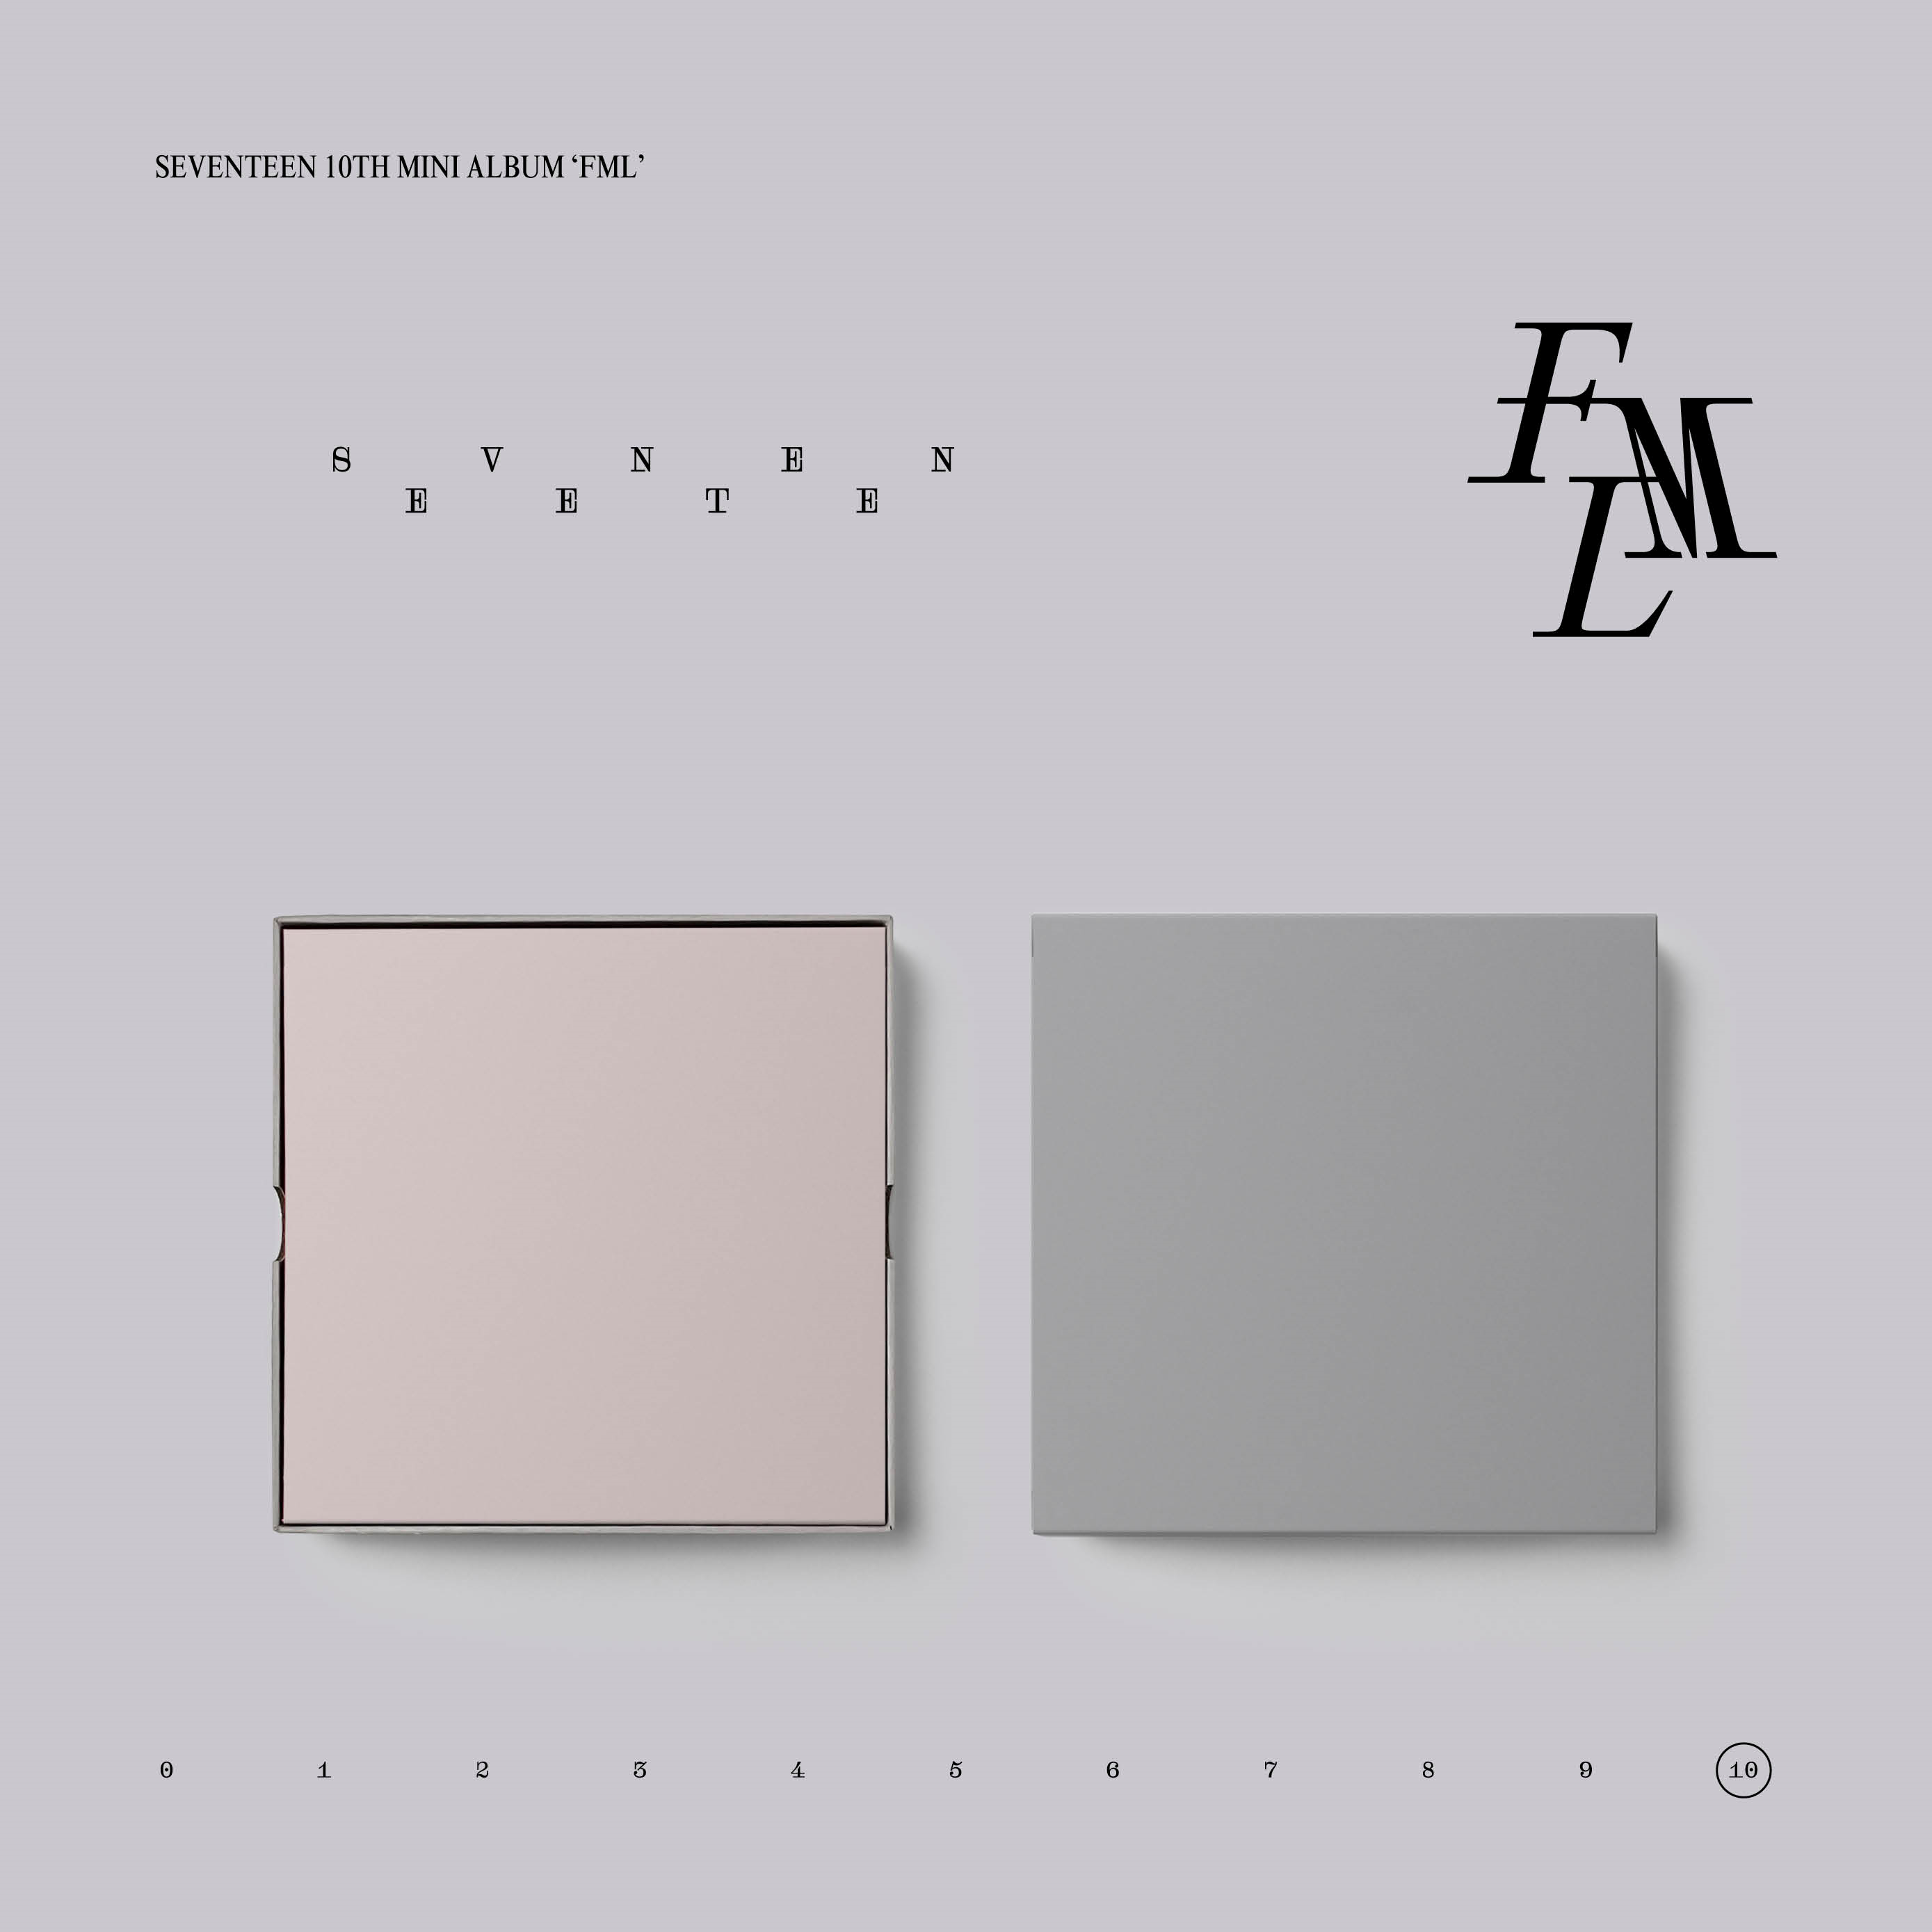 [拆卡专 无特典] SEVENTEEN - 10th Mini Album [FML] (CARAT Ver.)_SEVENTEEN打榜站